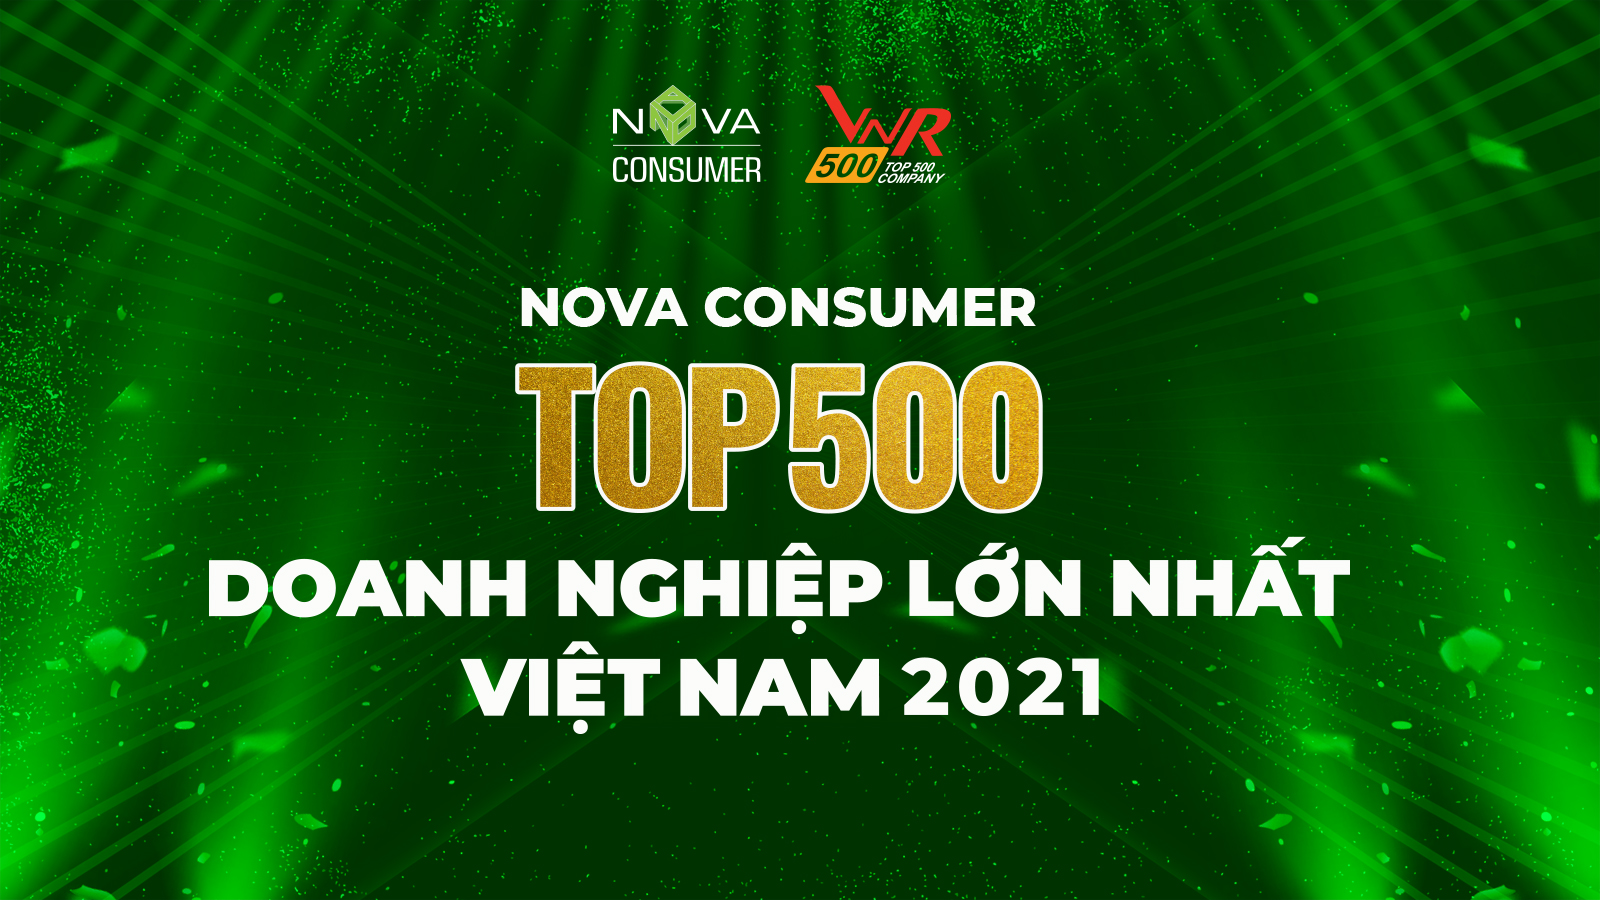 Nova Consumer được vinh danh Top 500 doanh nghiệp lớn nhất Việt Nam 2021 